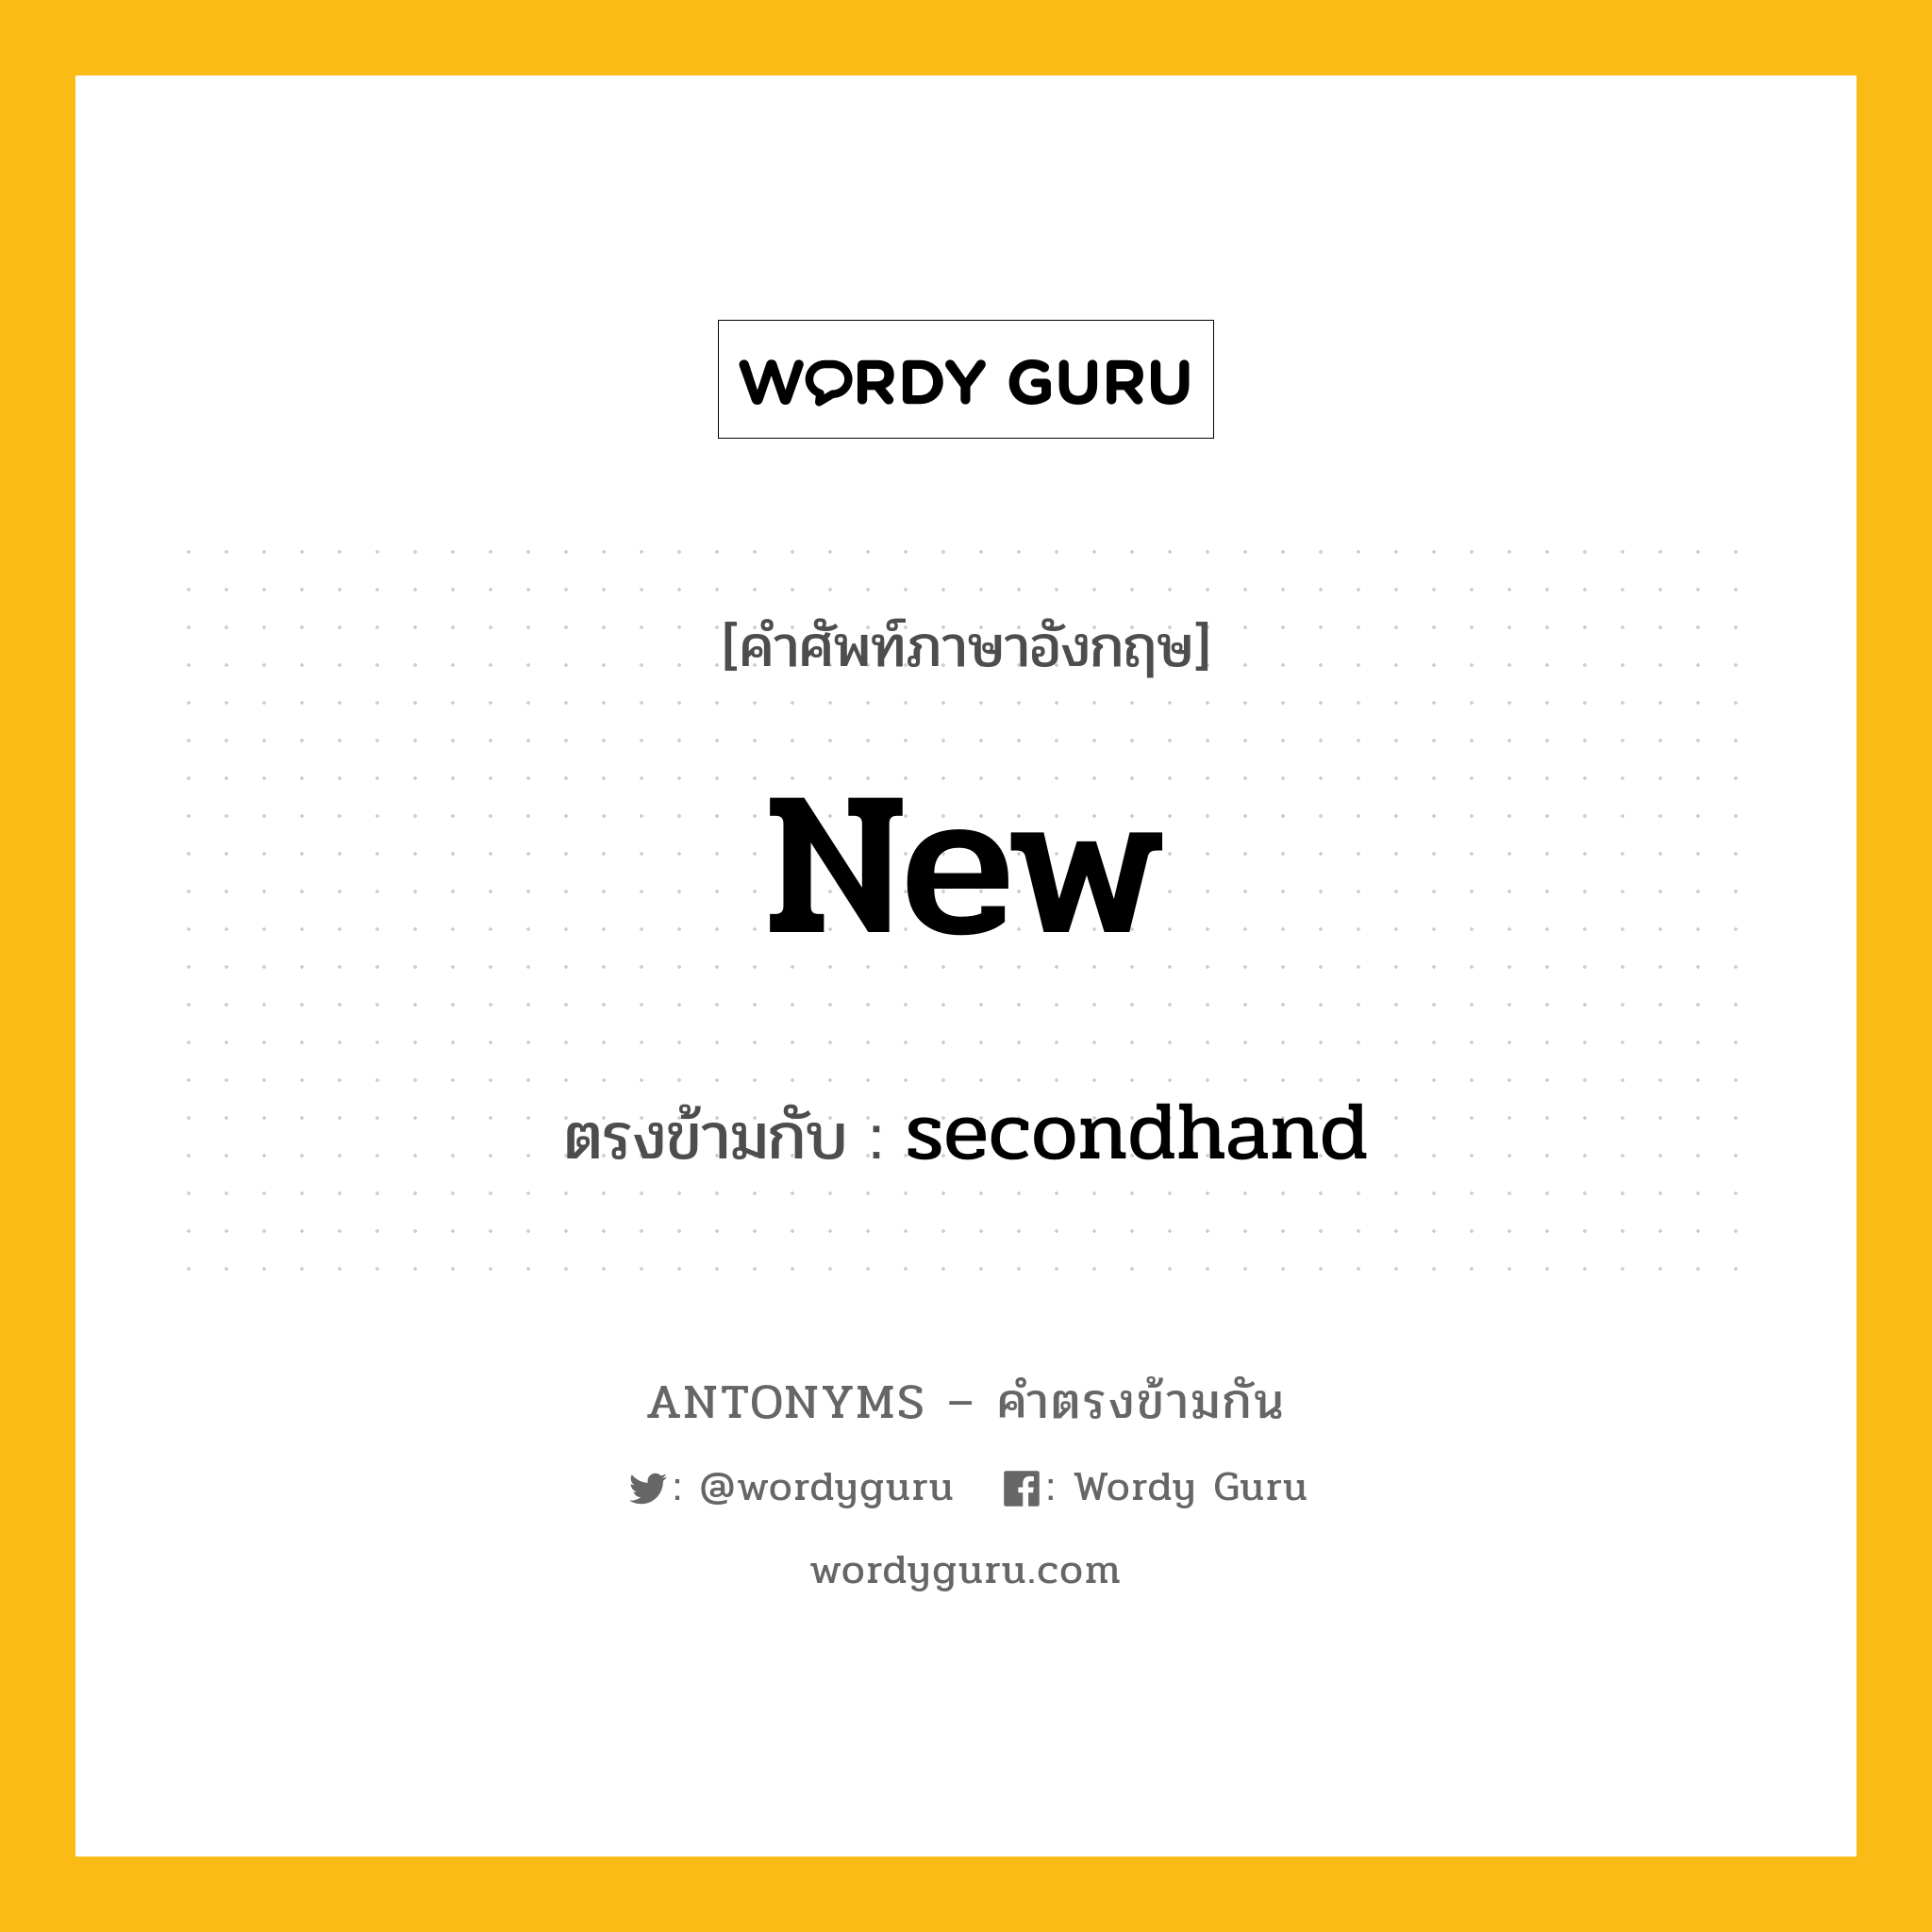 new เป็นคำตรงข้ามกับคำไหนบ้าง?, คำศัพท์ภาษาอังกฤษ new ตรงข้ามกับ secondhand หมวด secondhand